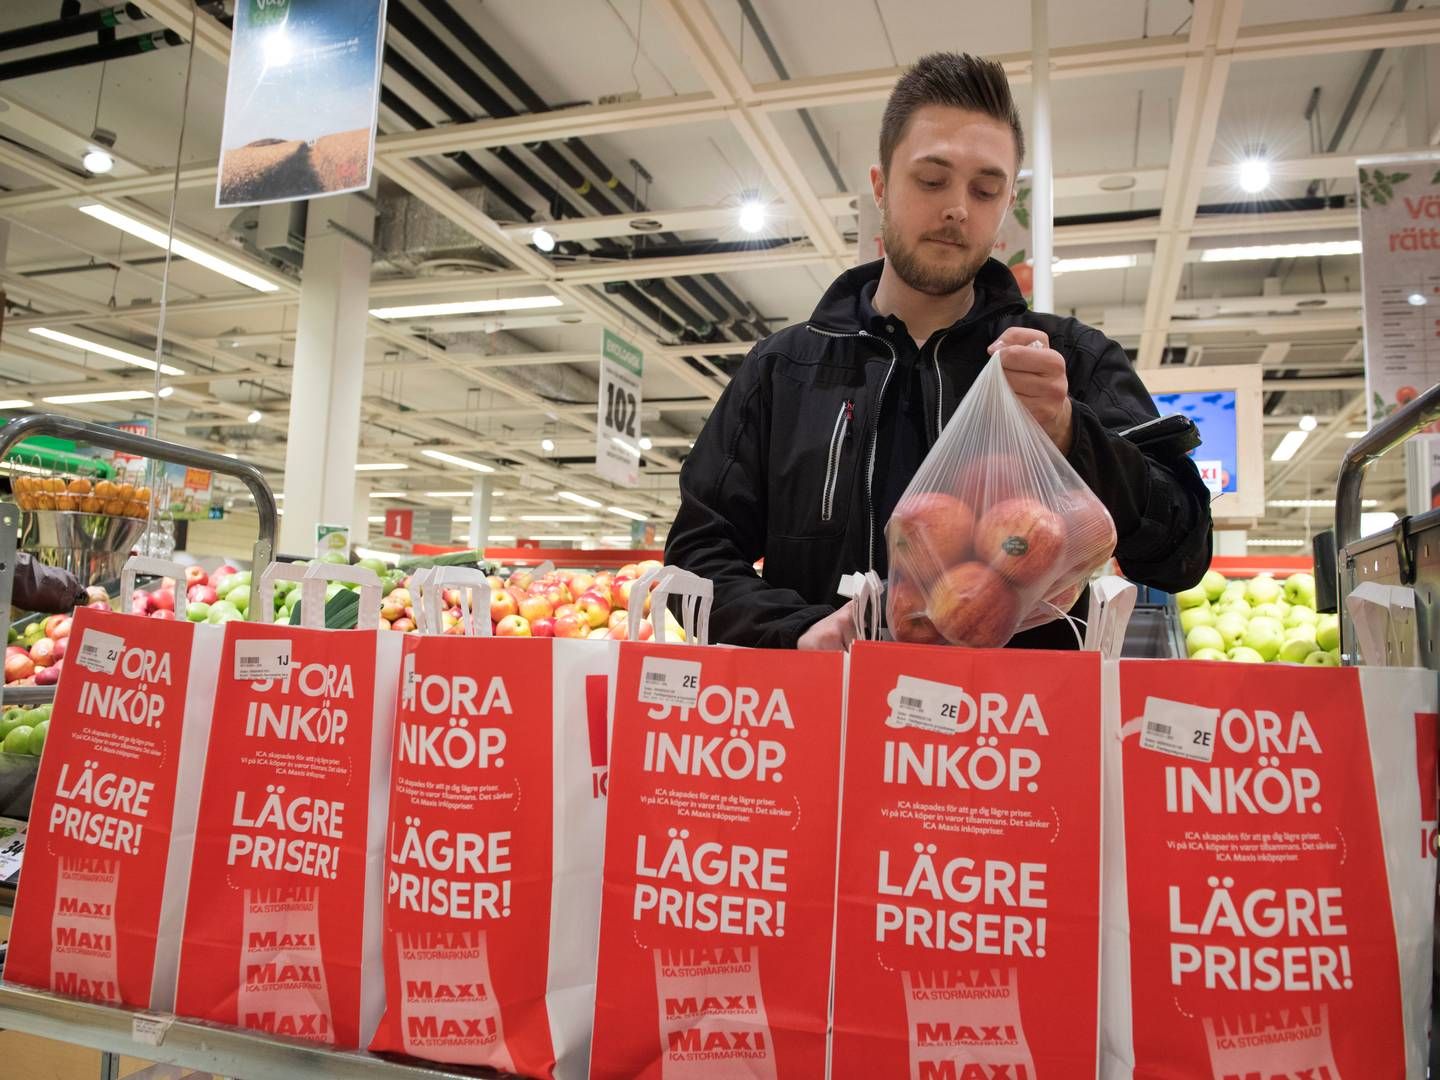 Dalende forbrug er en af grundene til, at Sveriges økonomi nu er i recession. | Foto: Pr/jessica Gow/tt